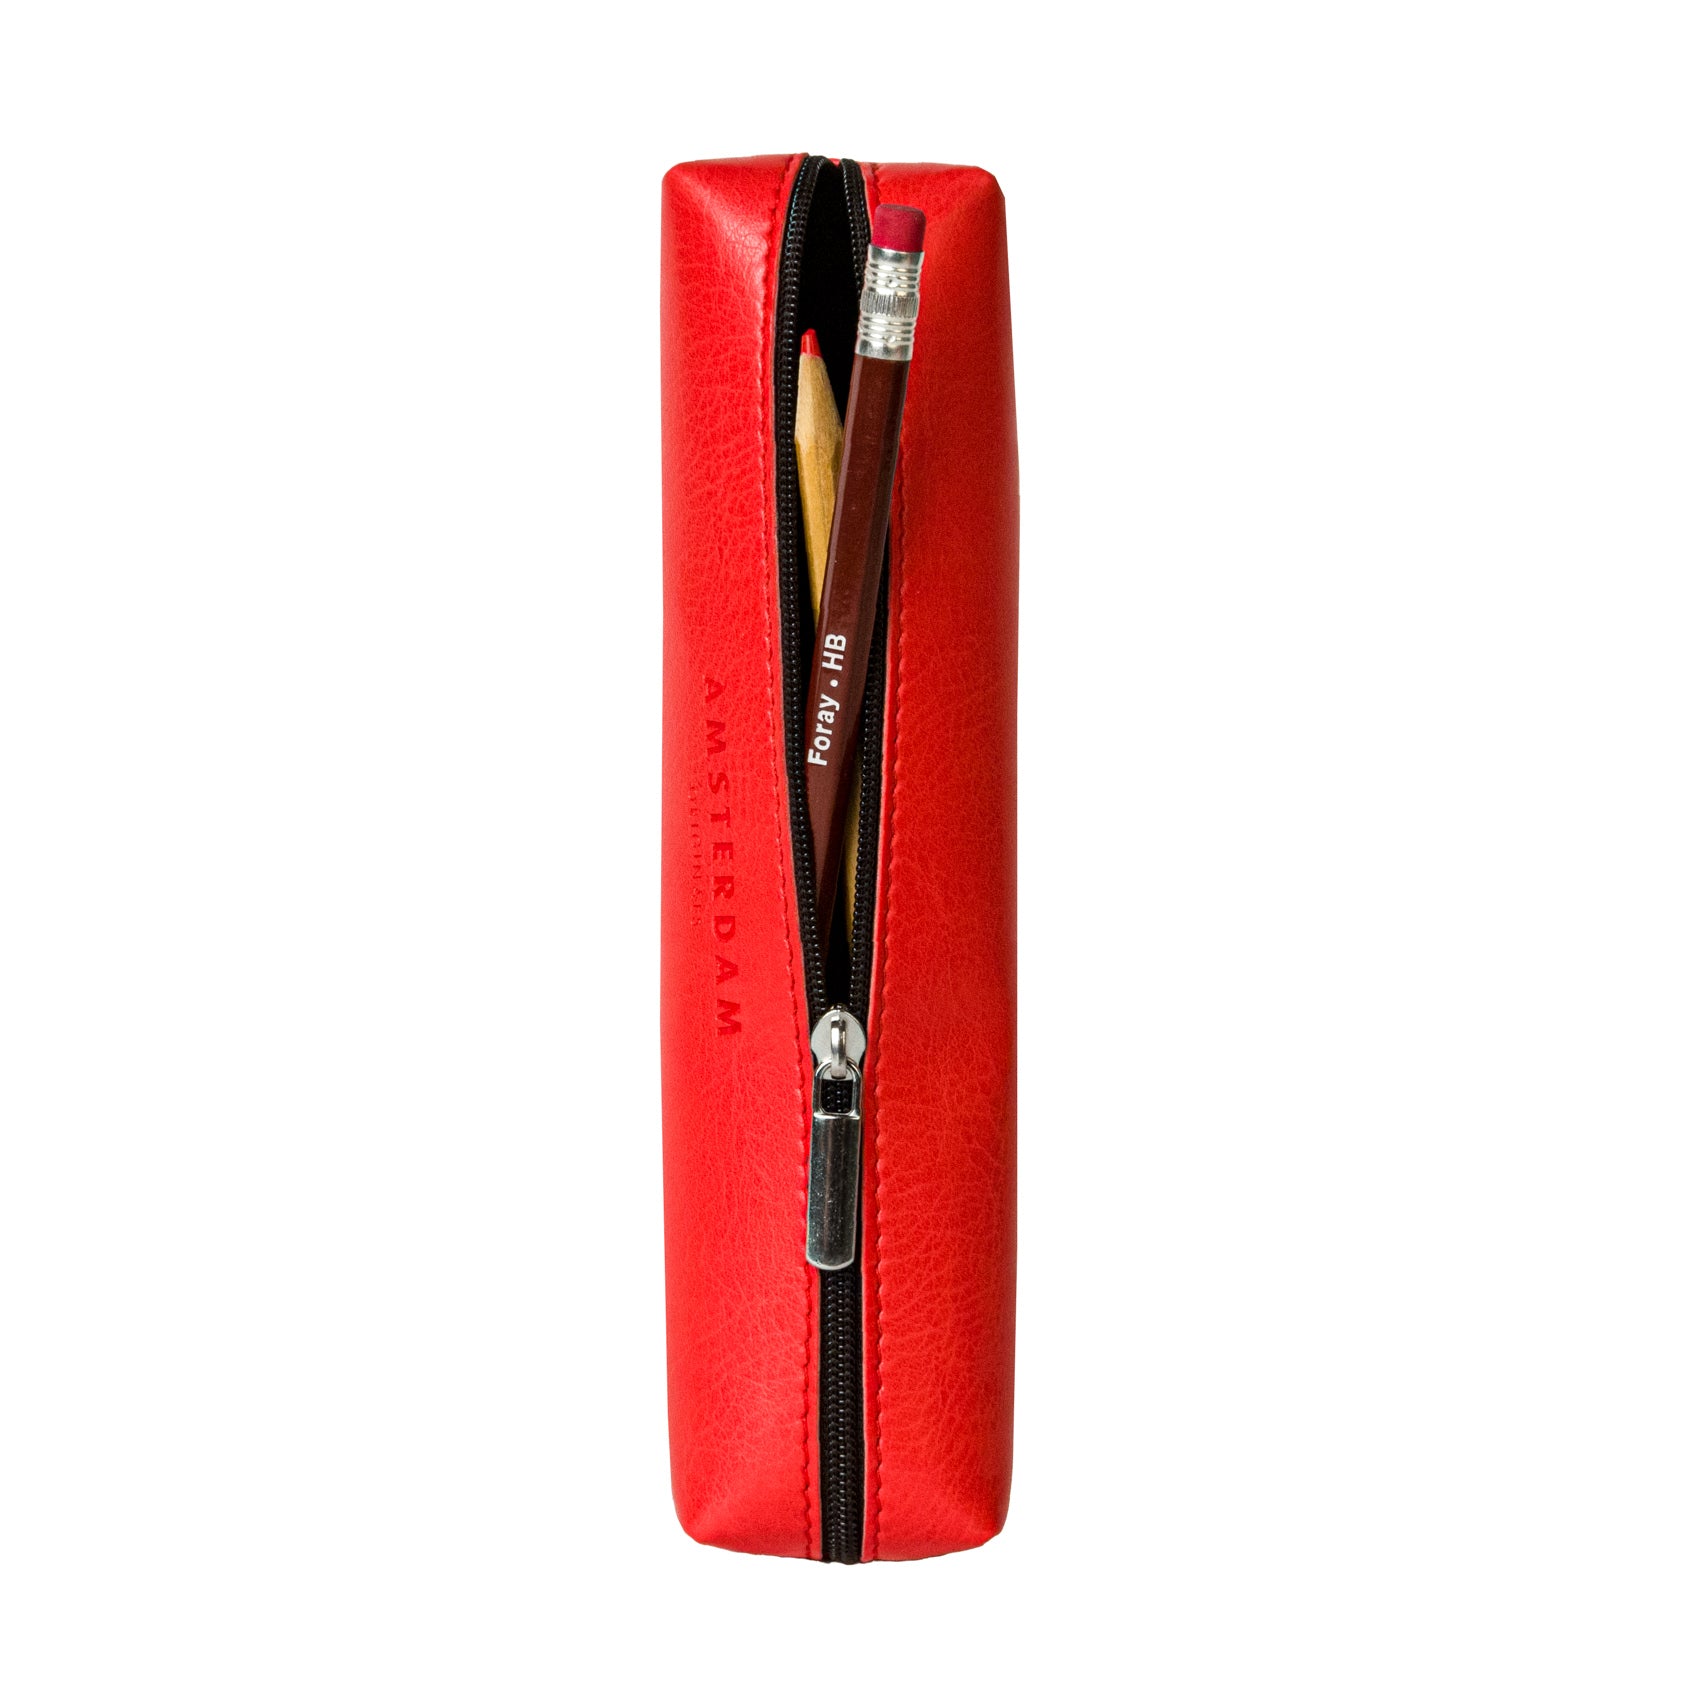 Vegan Leather Pencil case Amsterdam Originals